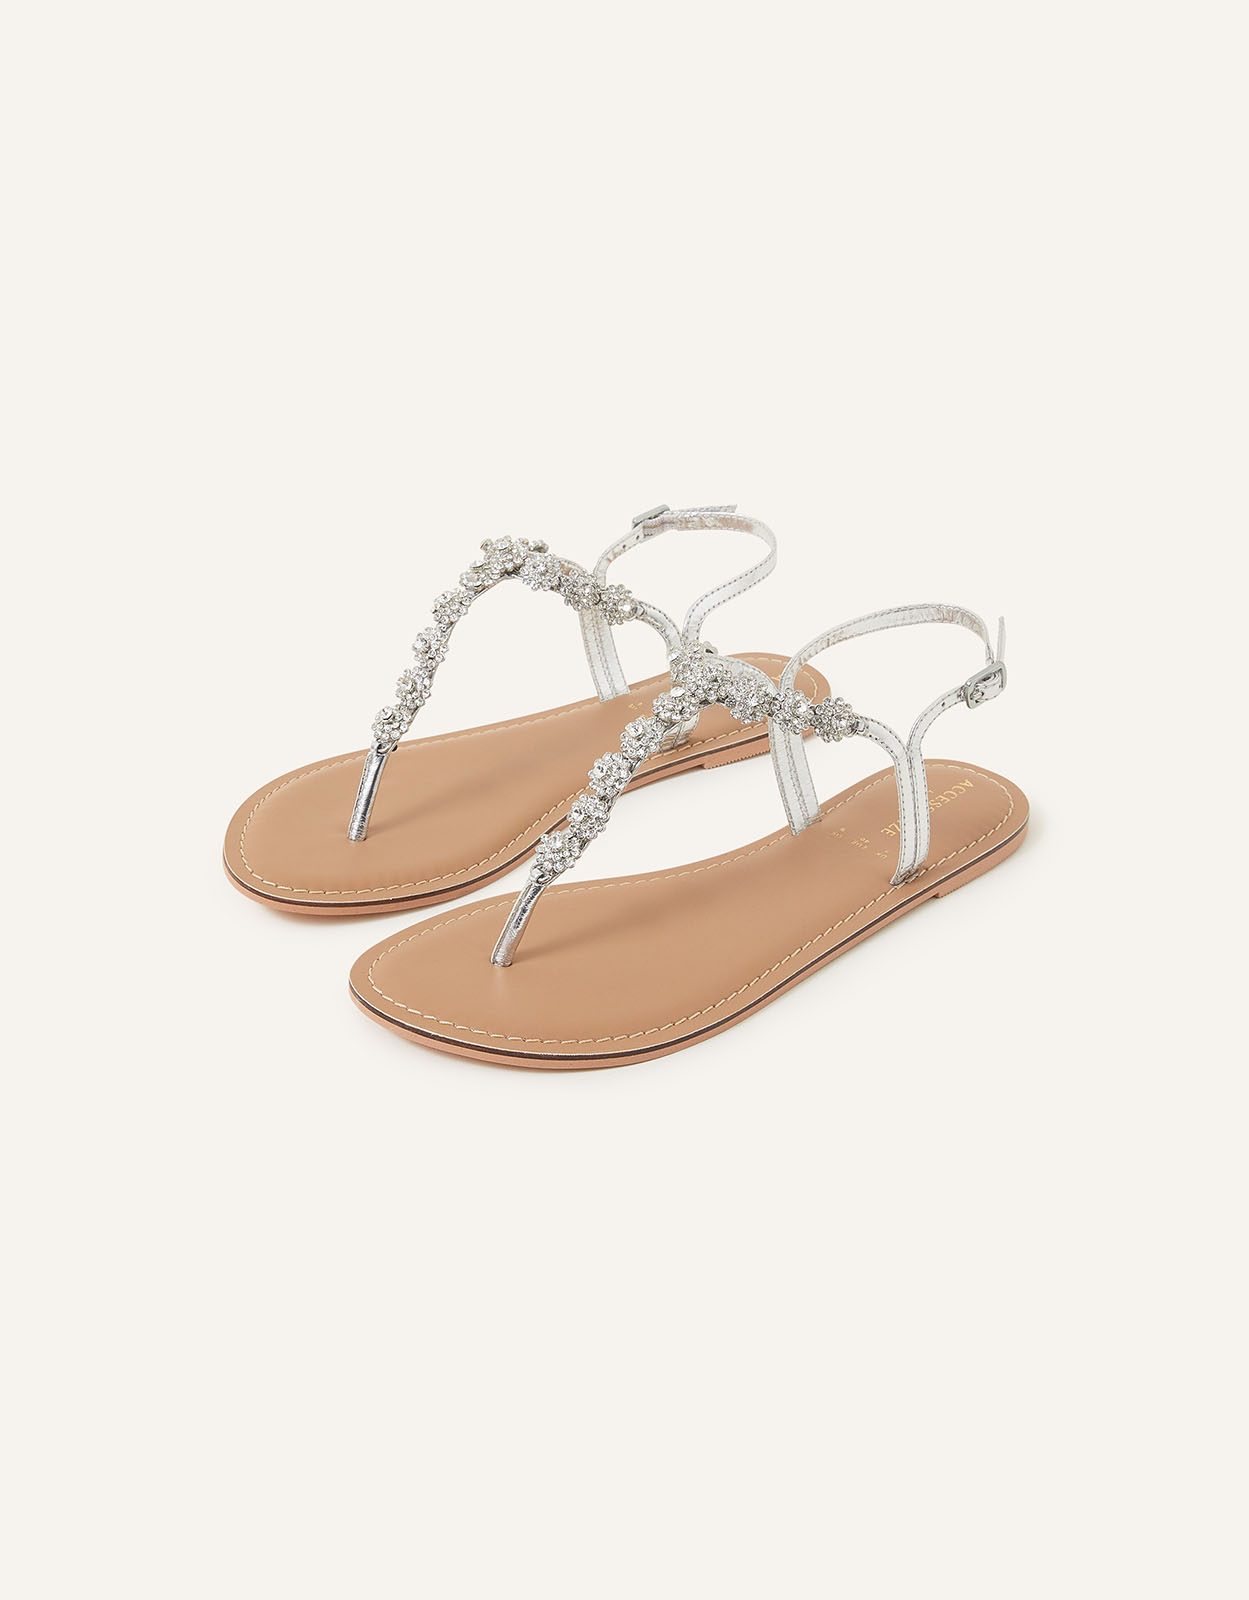 Accessorize Women's Reno Sparkle Diamante Sandals Silver, Size: 38